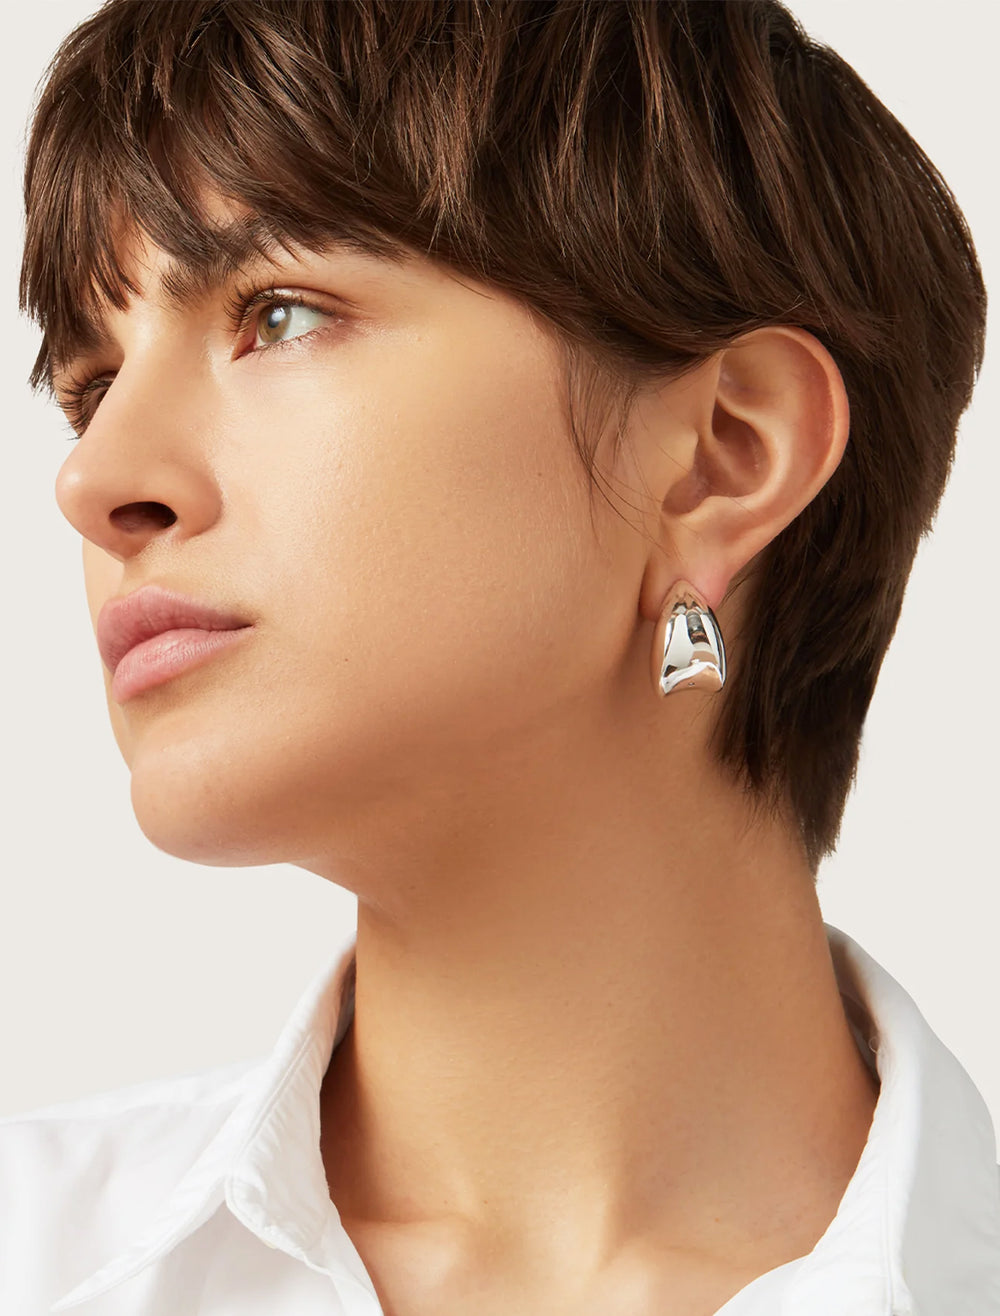 Model wearing Jenny Bird's nouveaux puff earrings in silver.